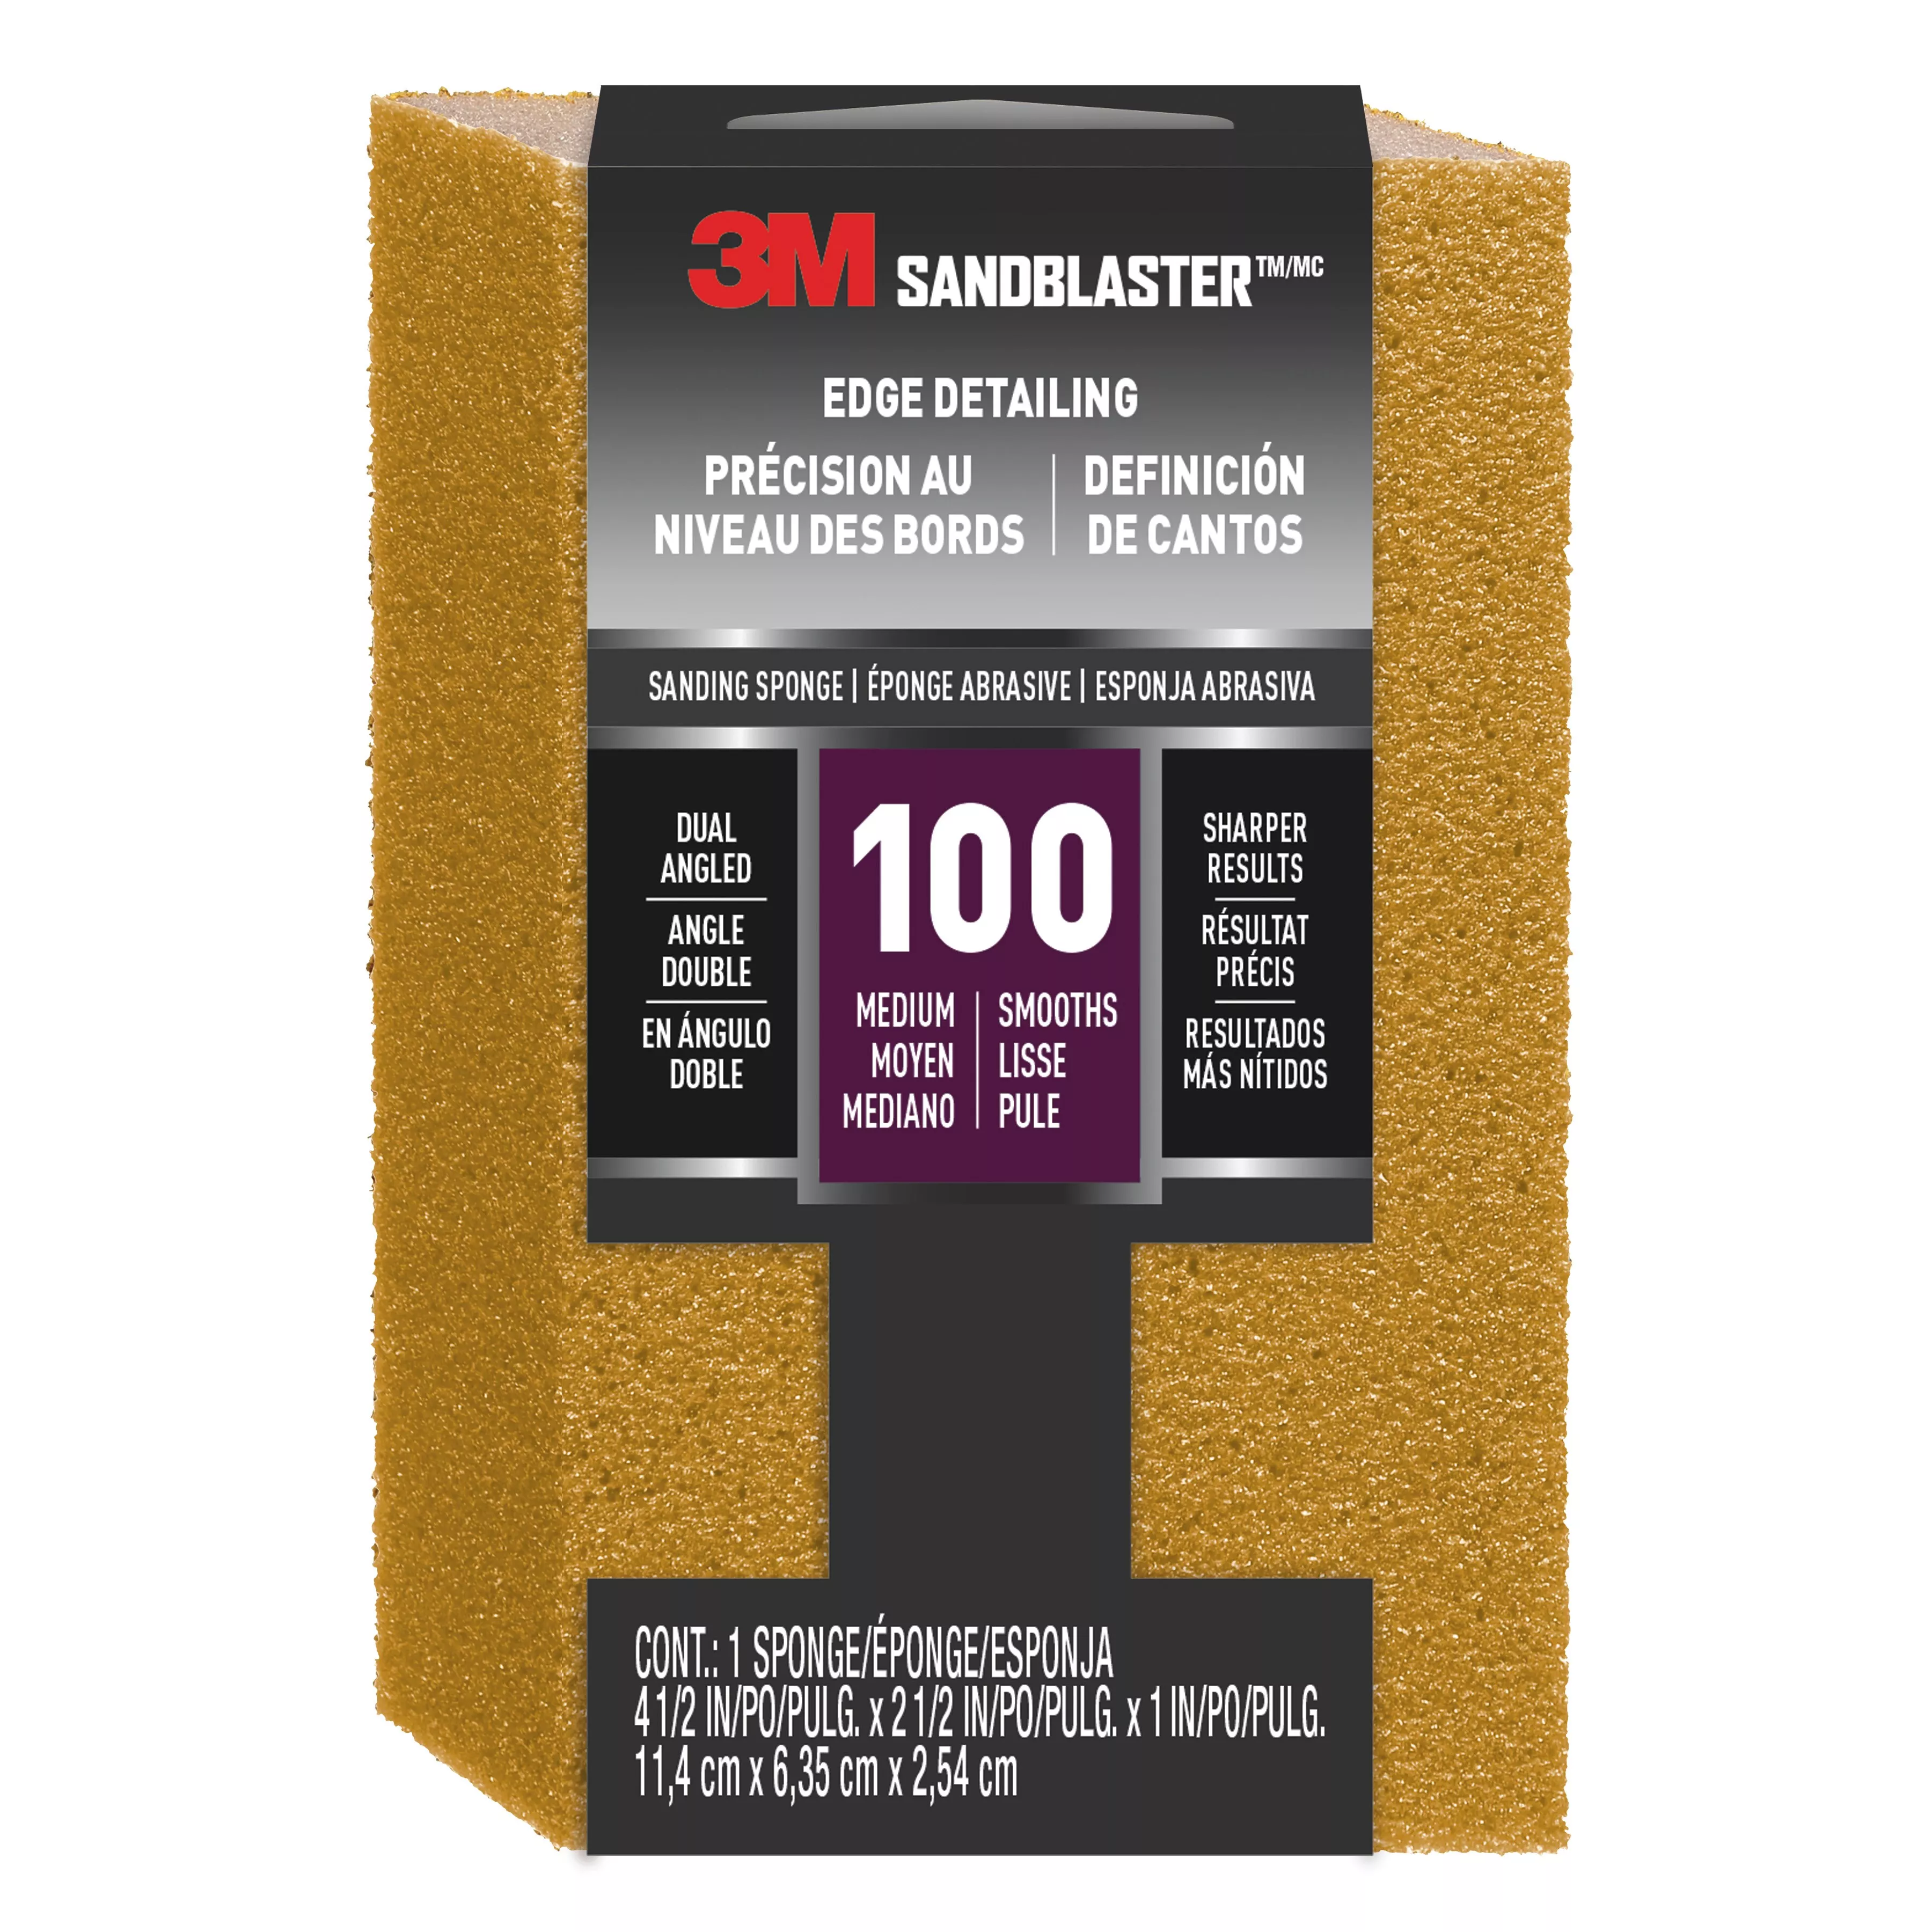 3M™ SandBlaster™ EDGE DETAILING Sanding Sponge, 9560 ,100 grit, 4 1/2 in
x 2 1/2 x 1 in, 1/pk